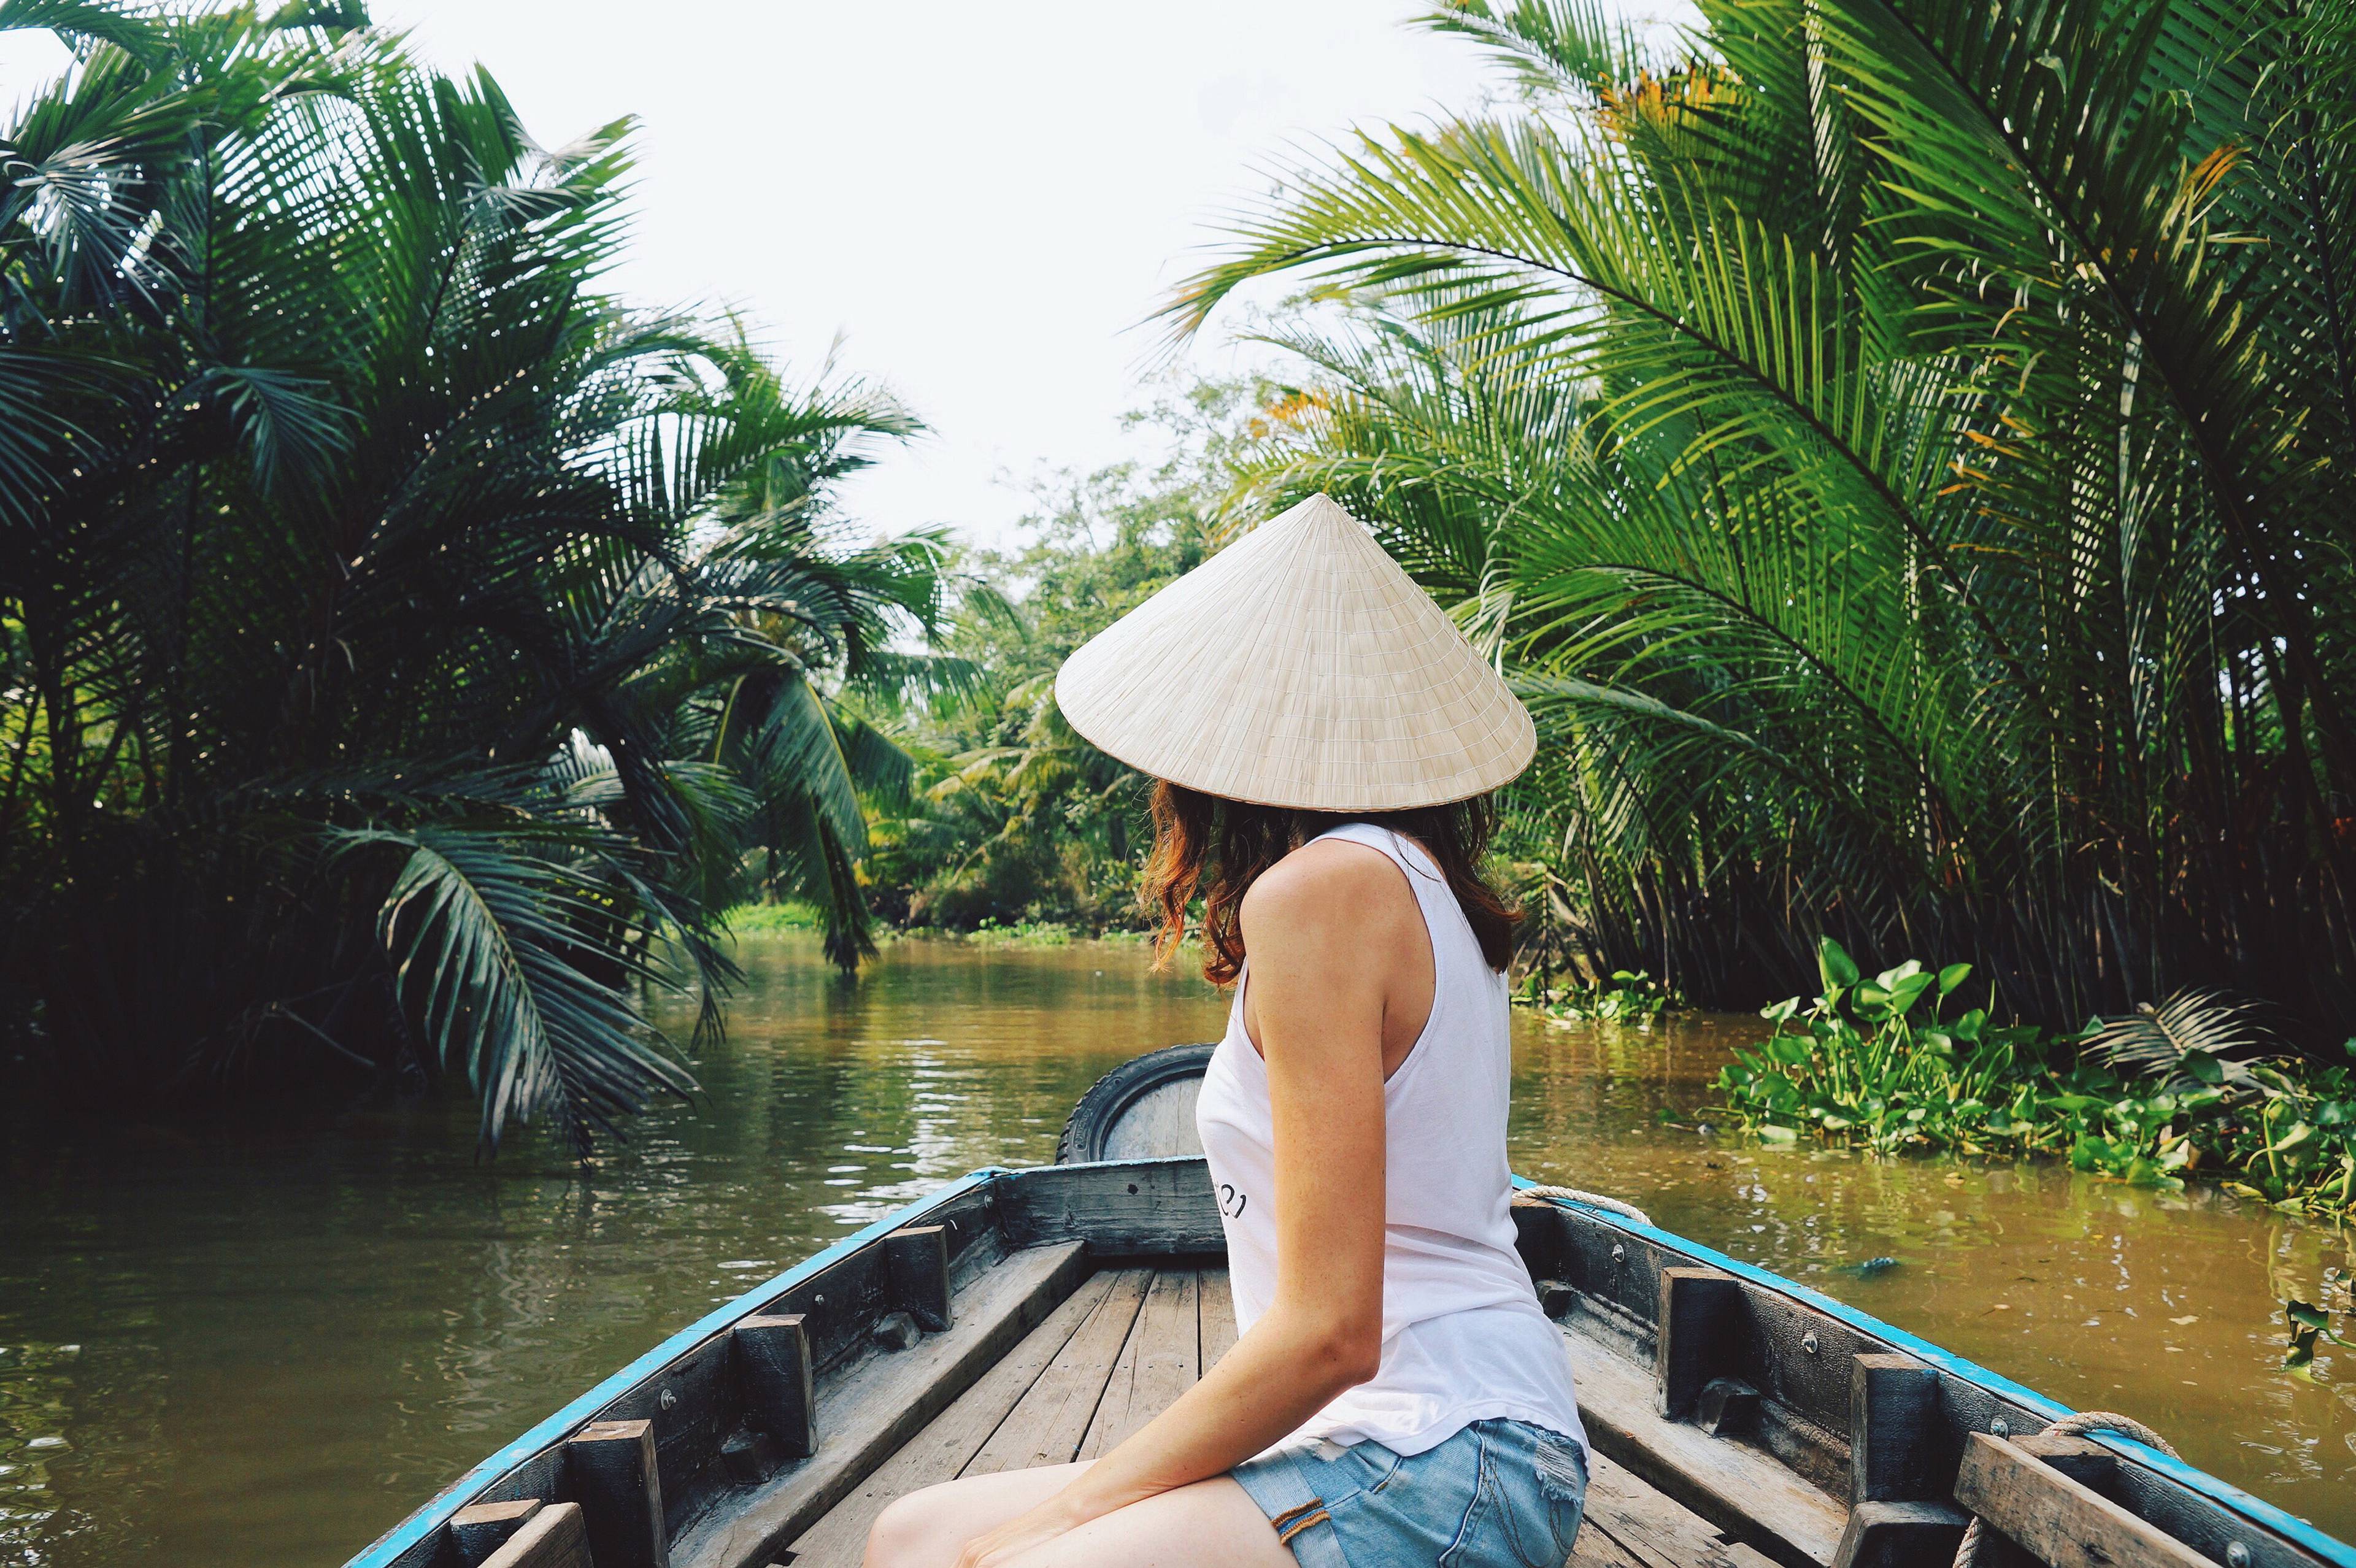 ragazza con cappello tradizionale in barca su fiume in vietnam